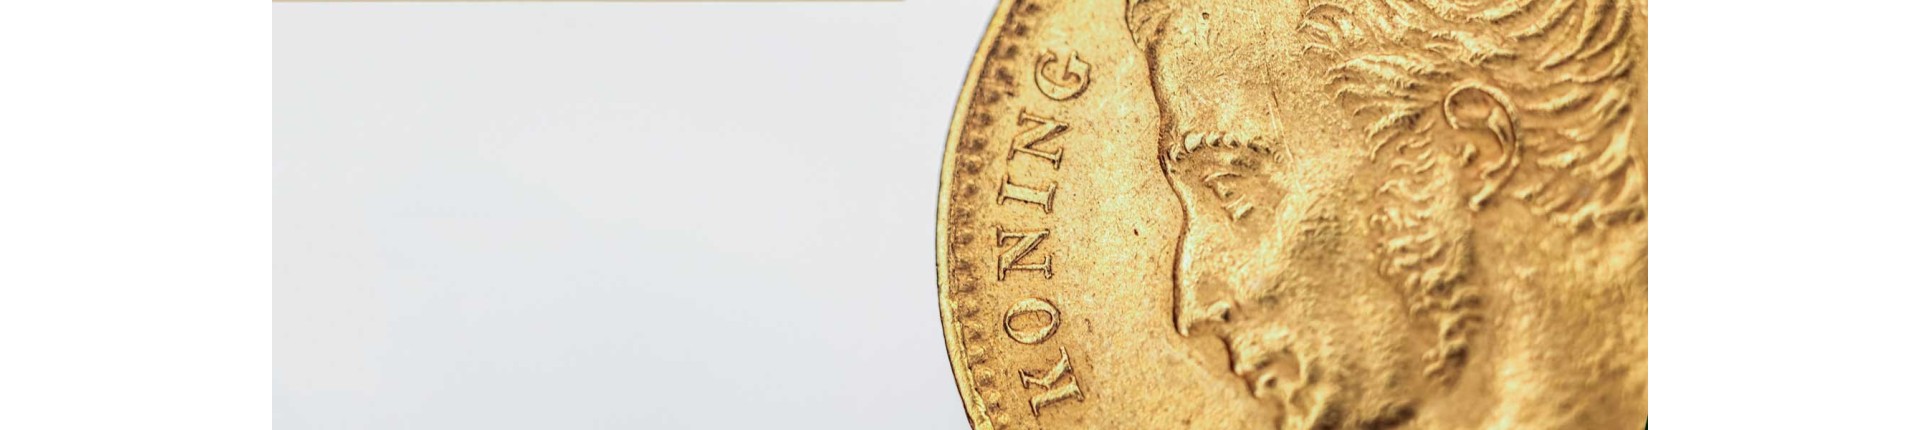 Historische gouden munten kopen? | Veilig & betrouwbaar | Goudwisselkantoor